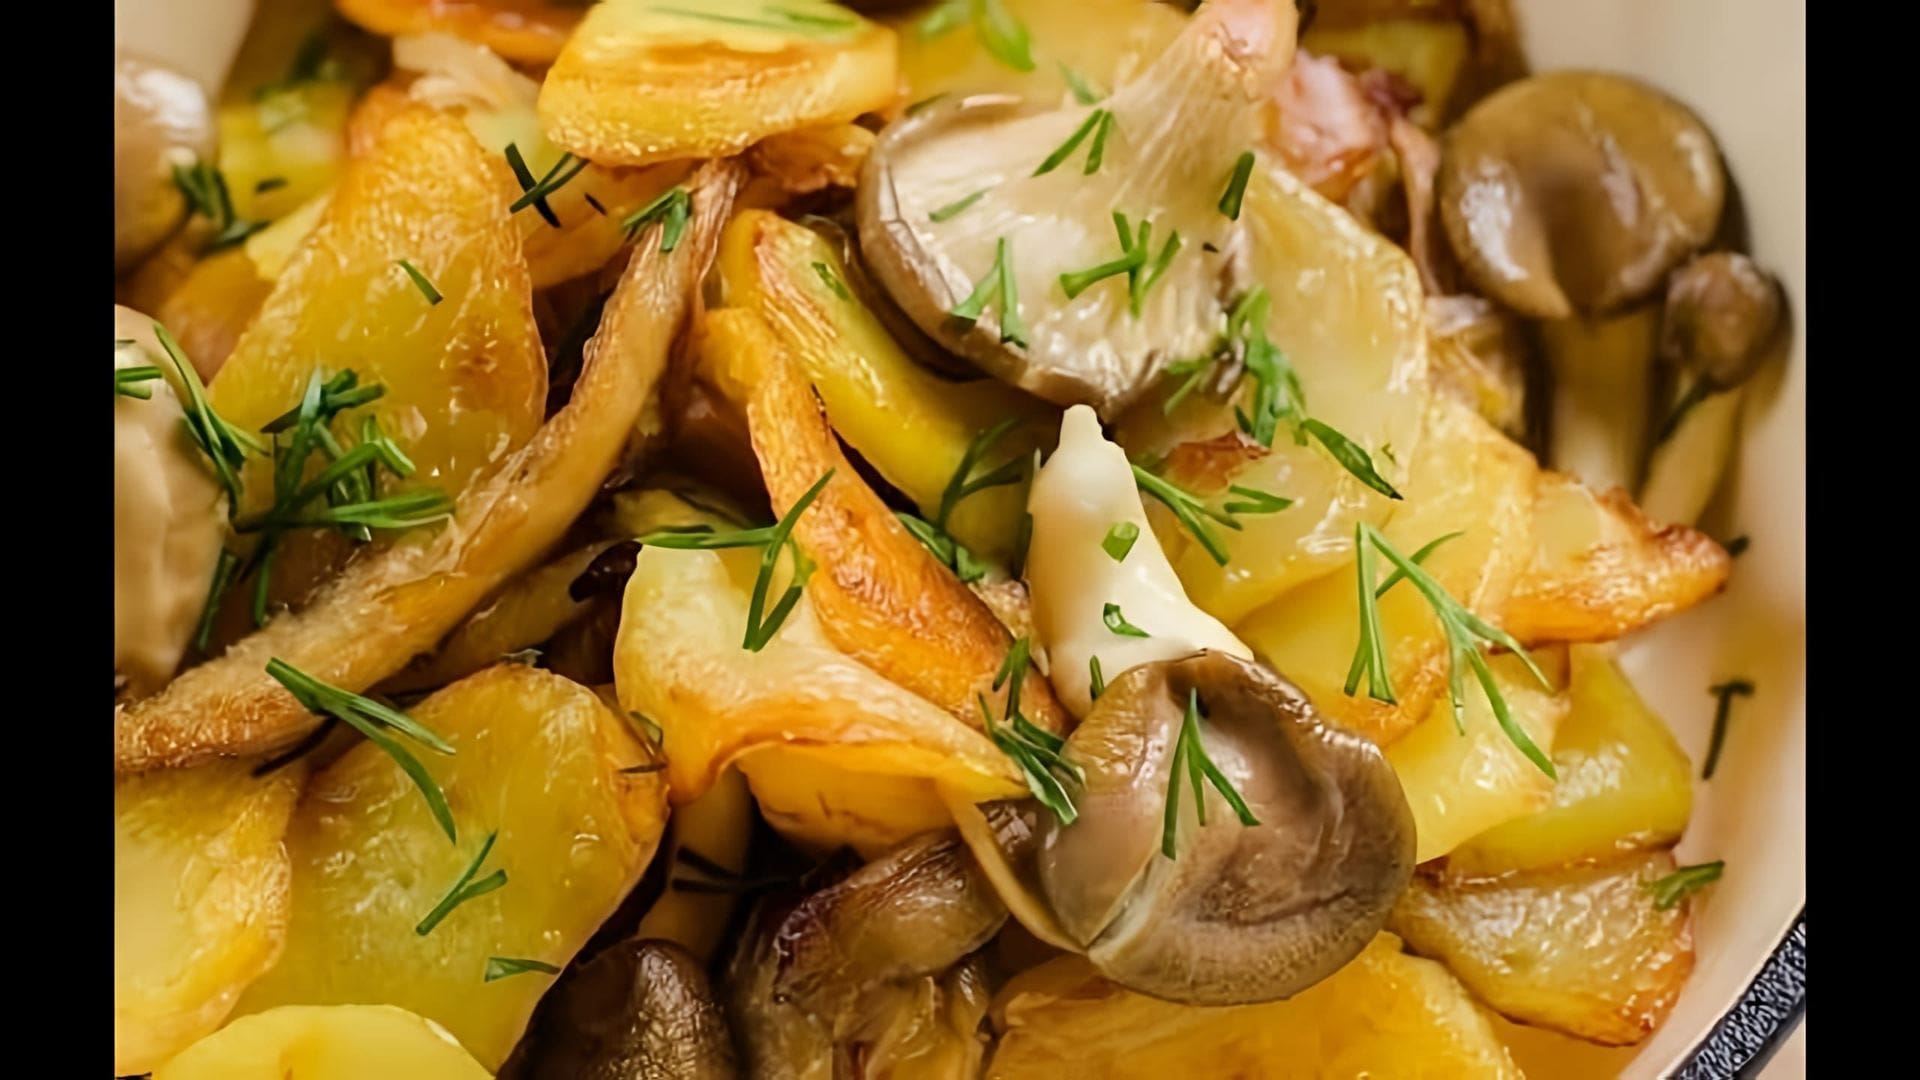 Очень вкусная жареная картошка с грибами вешенками - это видео-ролик, который демонстрирует процесс приготовления этого вкусного блюда